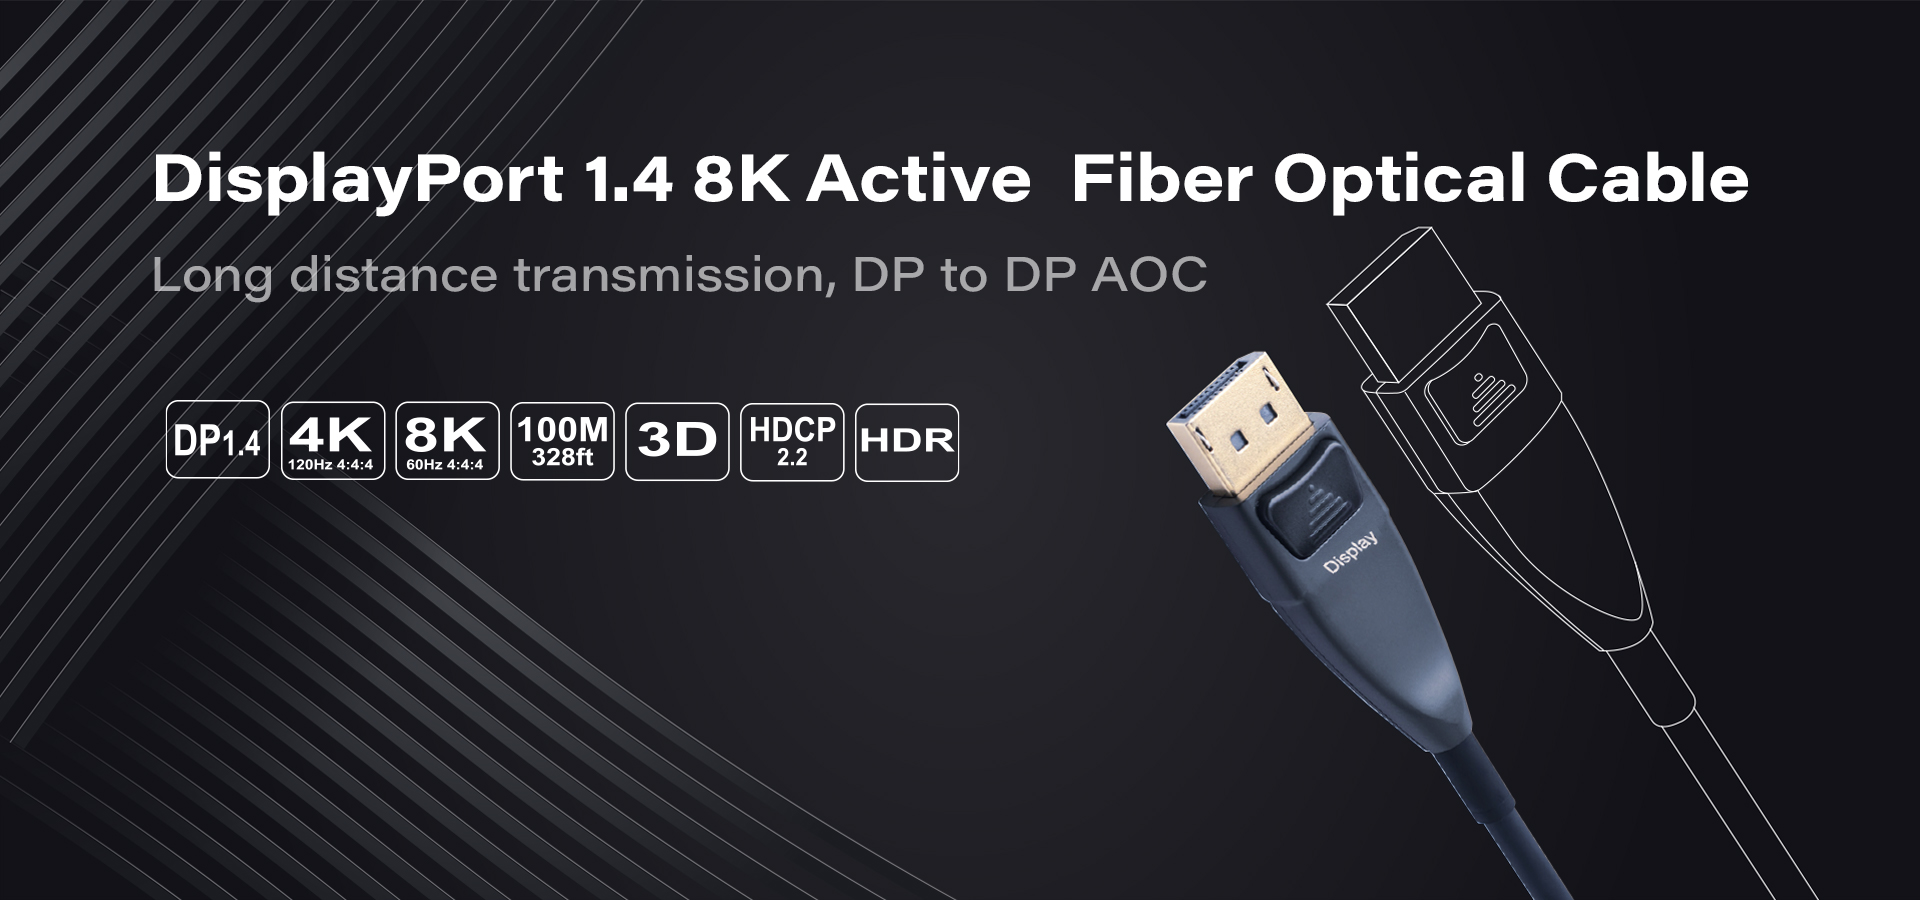 infobit-dp-4k-8k-active-optical-fiber-cable-hdr